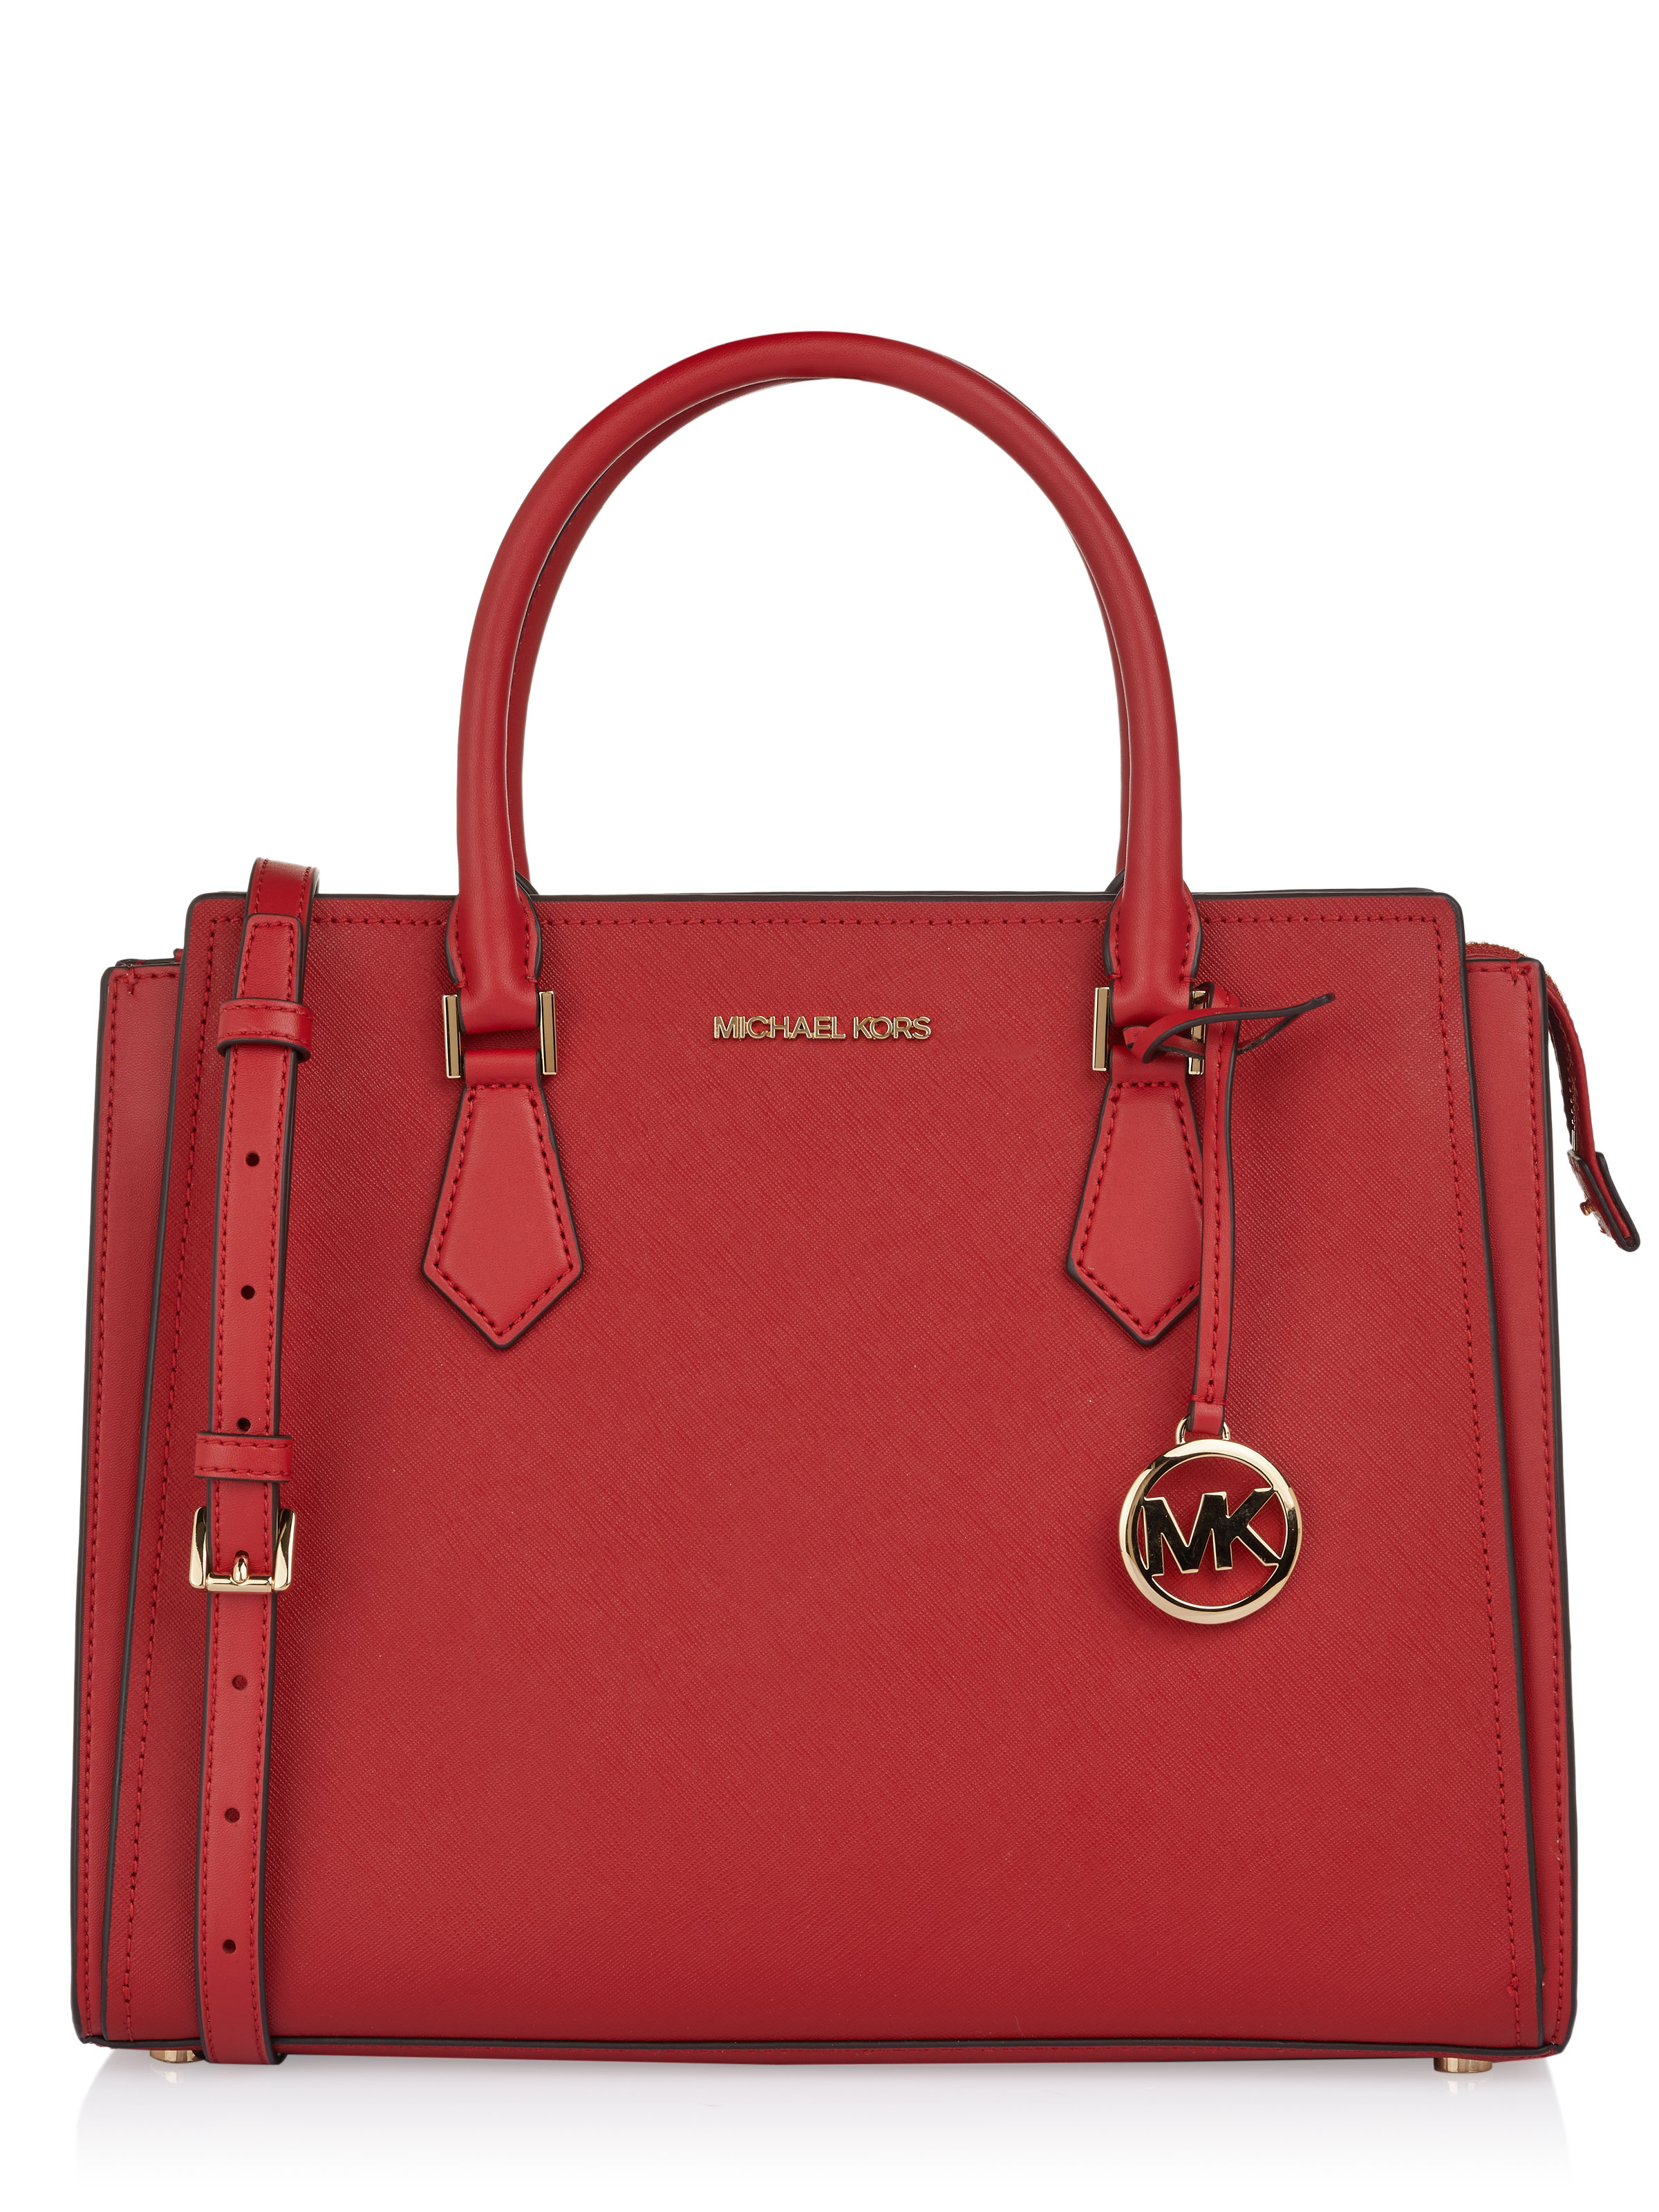 Michael Kors Jade Leather Red Gusset Shoulder Bag  Bags Shoulder bag  Leather